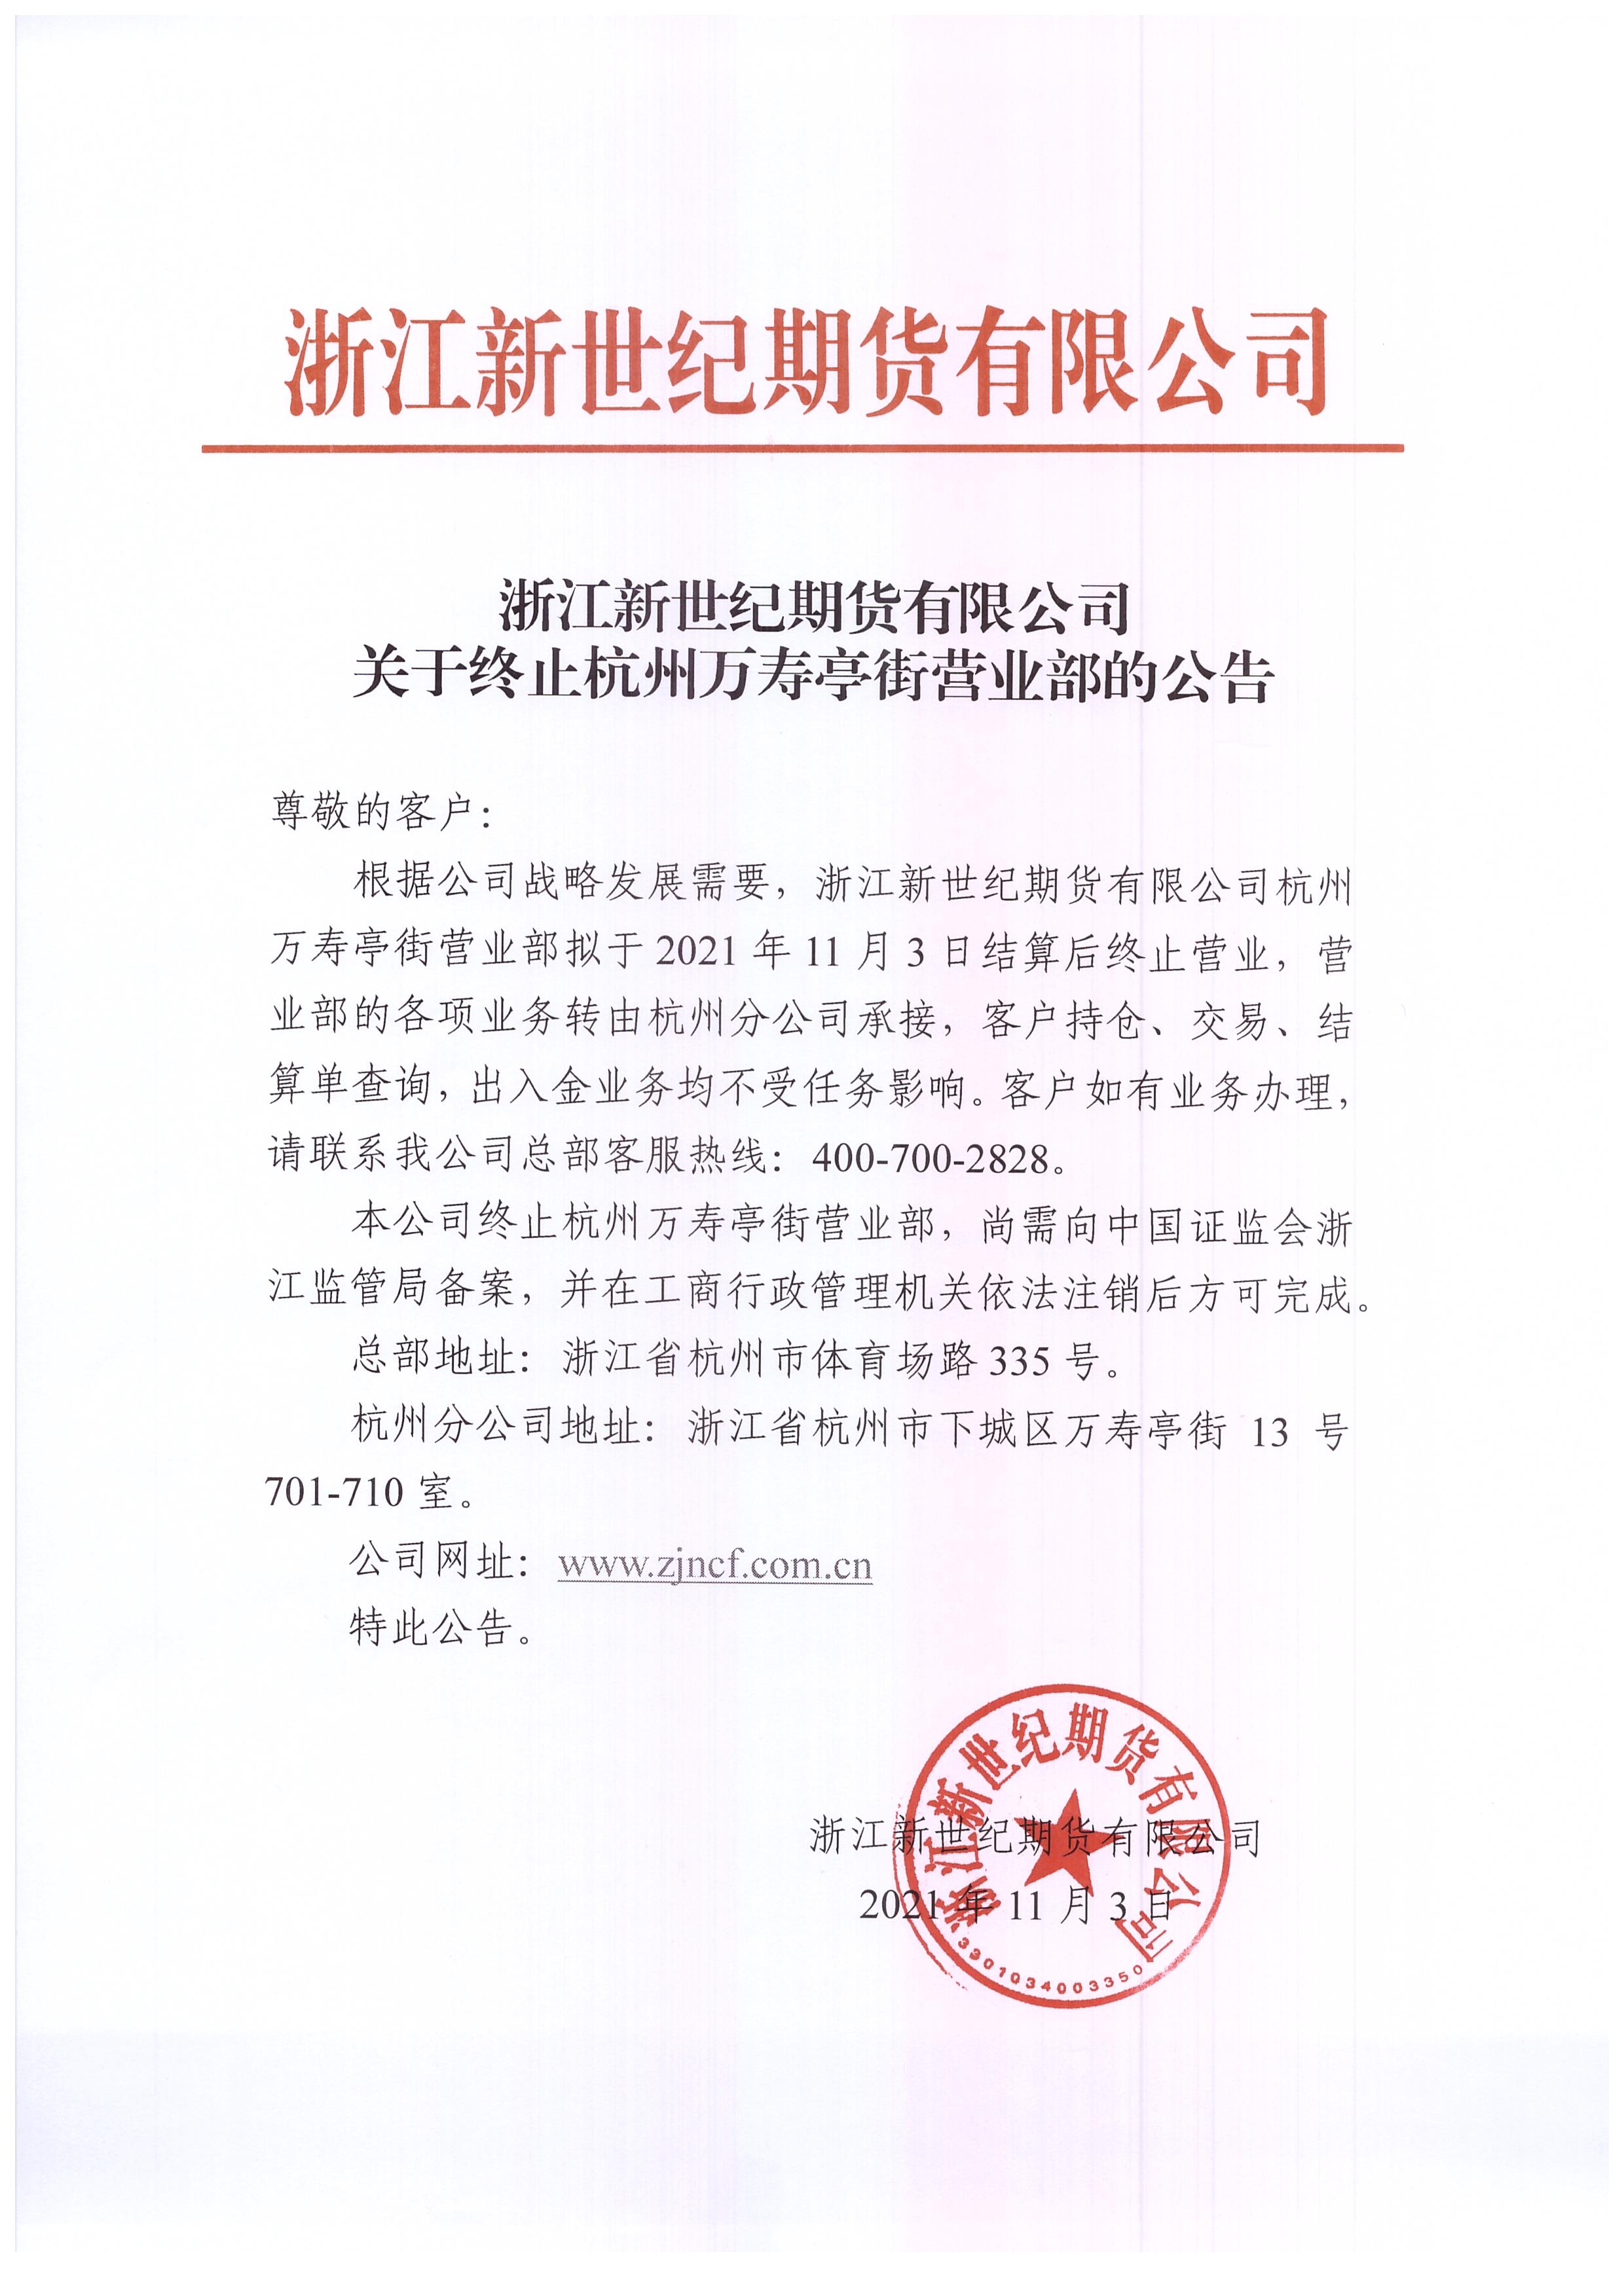 浙江新世纪期货有限公司关于终止杭州万寿亭街营业部的公告.jpg